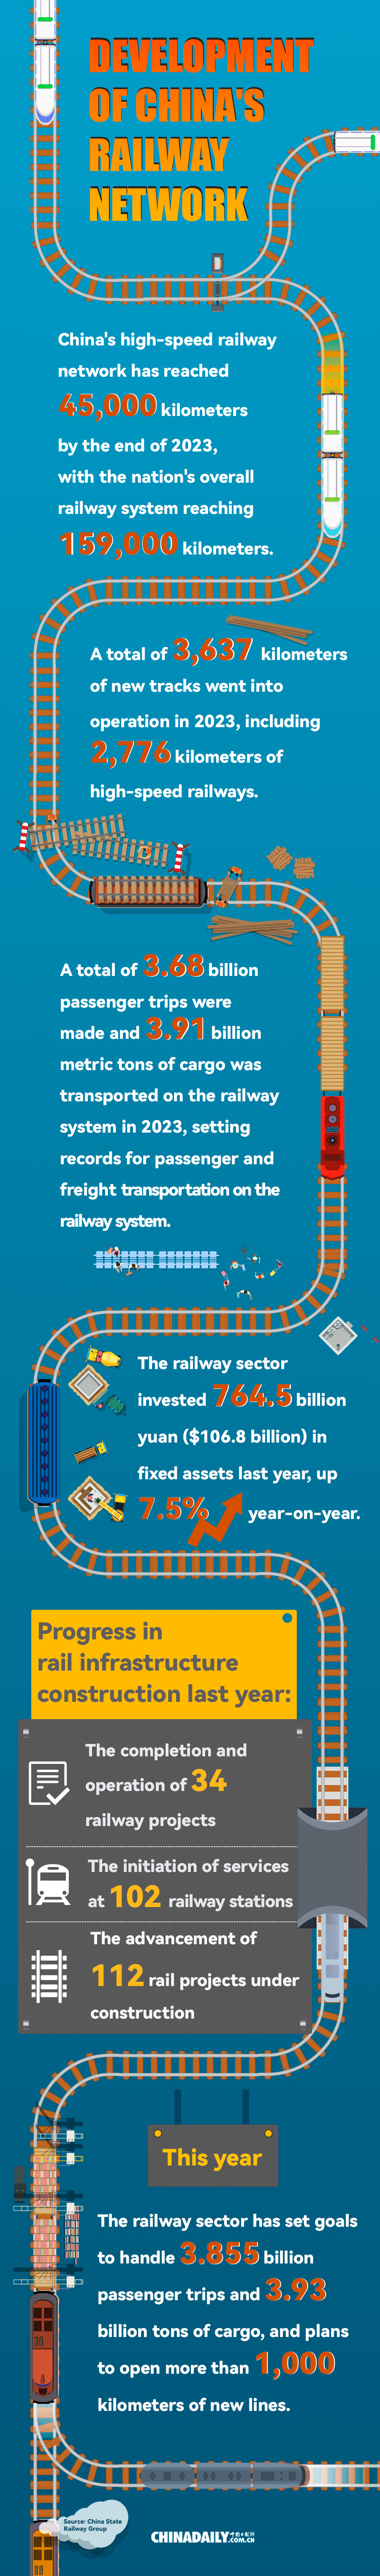 Development of China's railway network